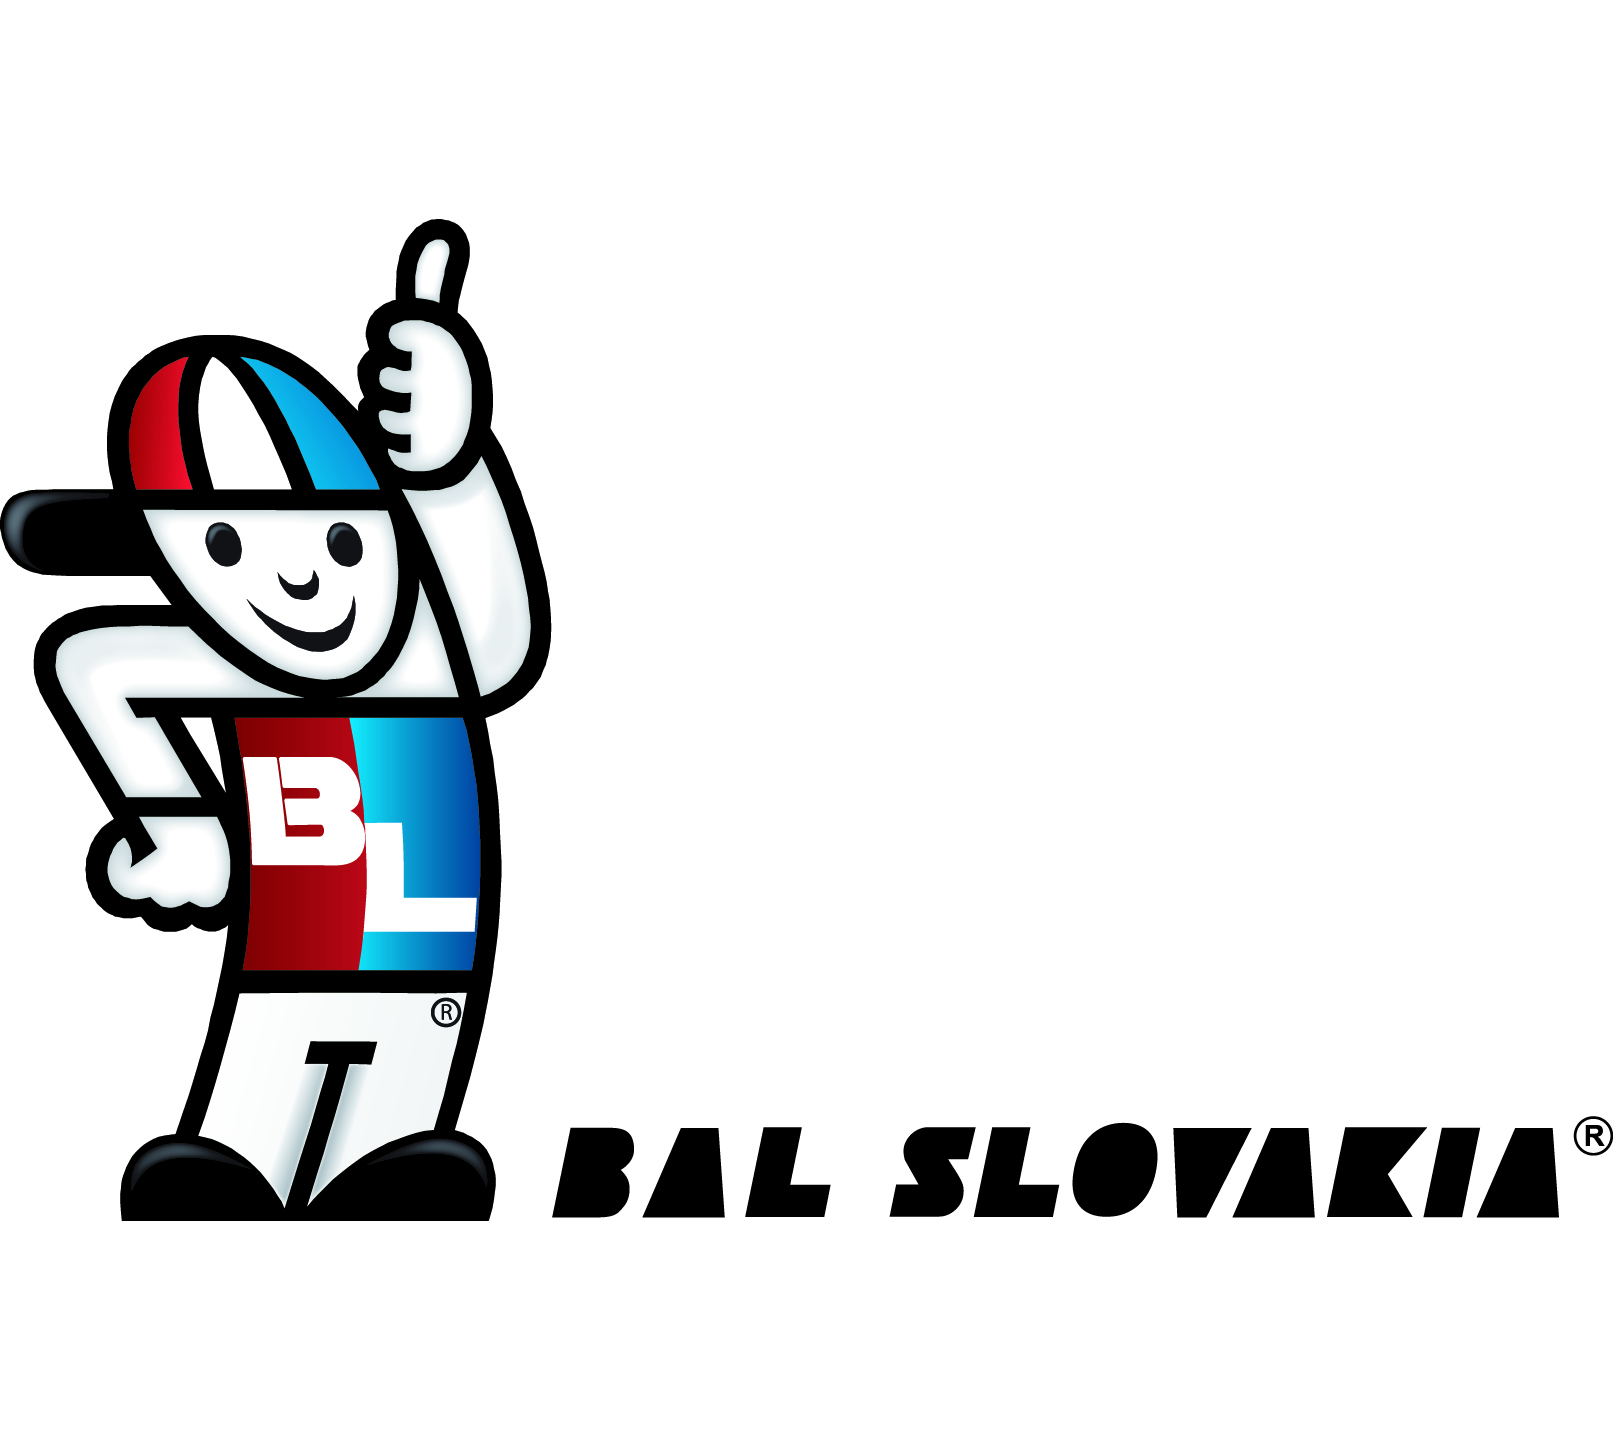 BAL Slovakia